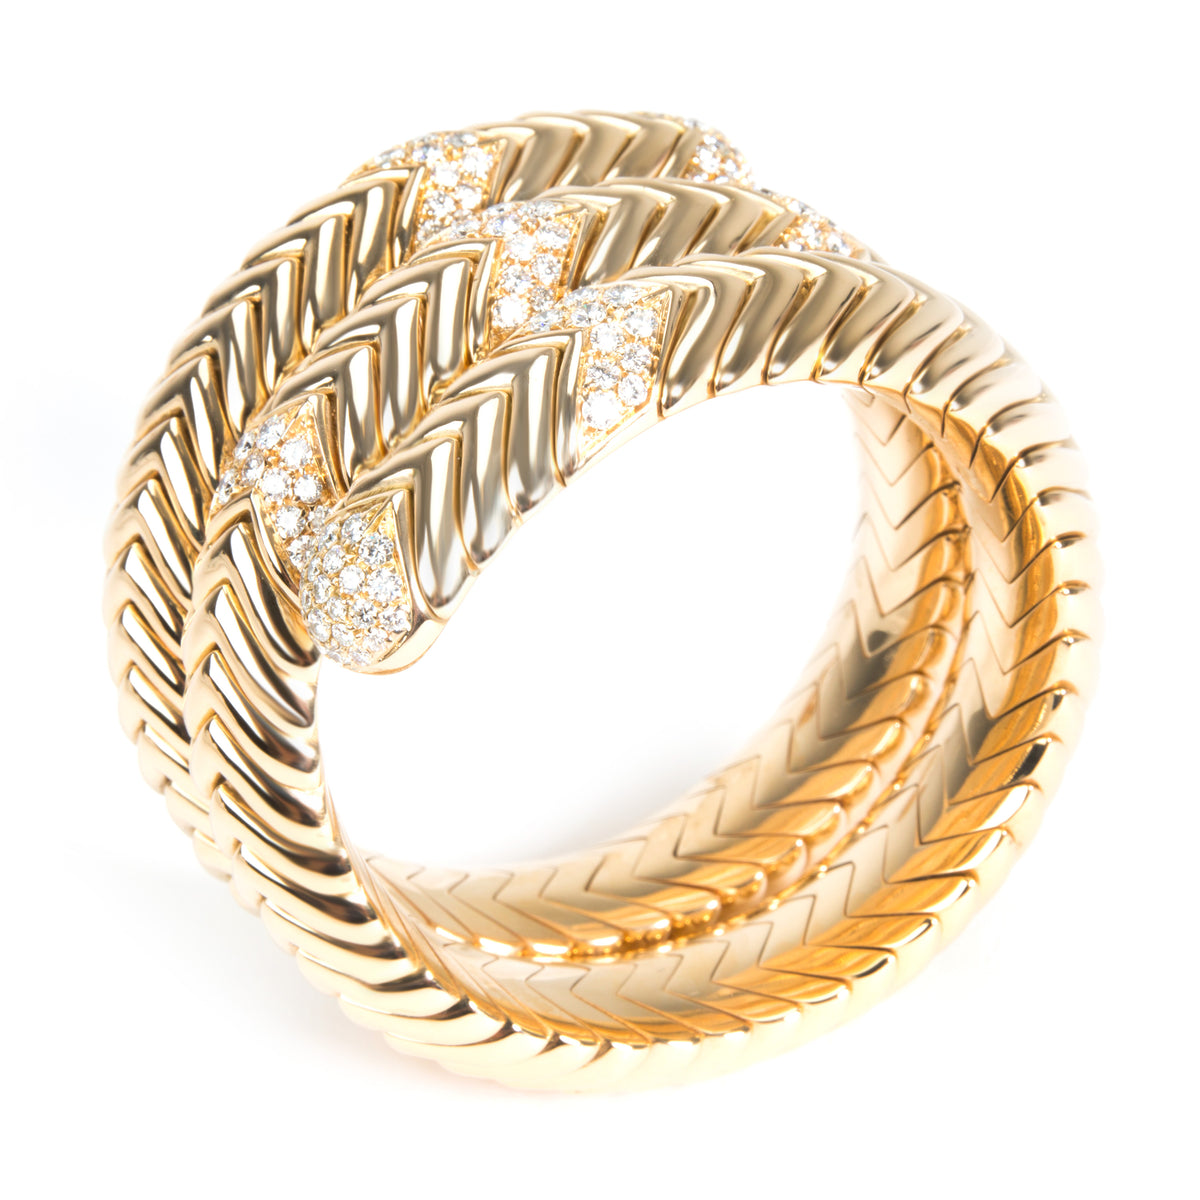 Bulgari Spiga Wrap Diamond Bracelet in 18K Yellow Gold 3.5 CTW